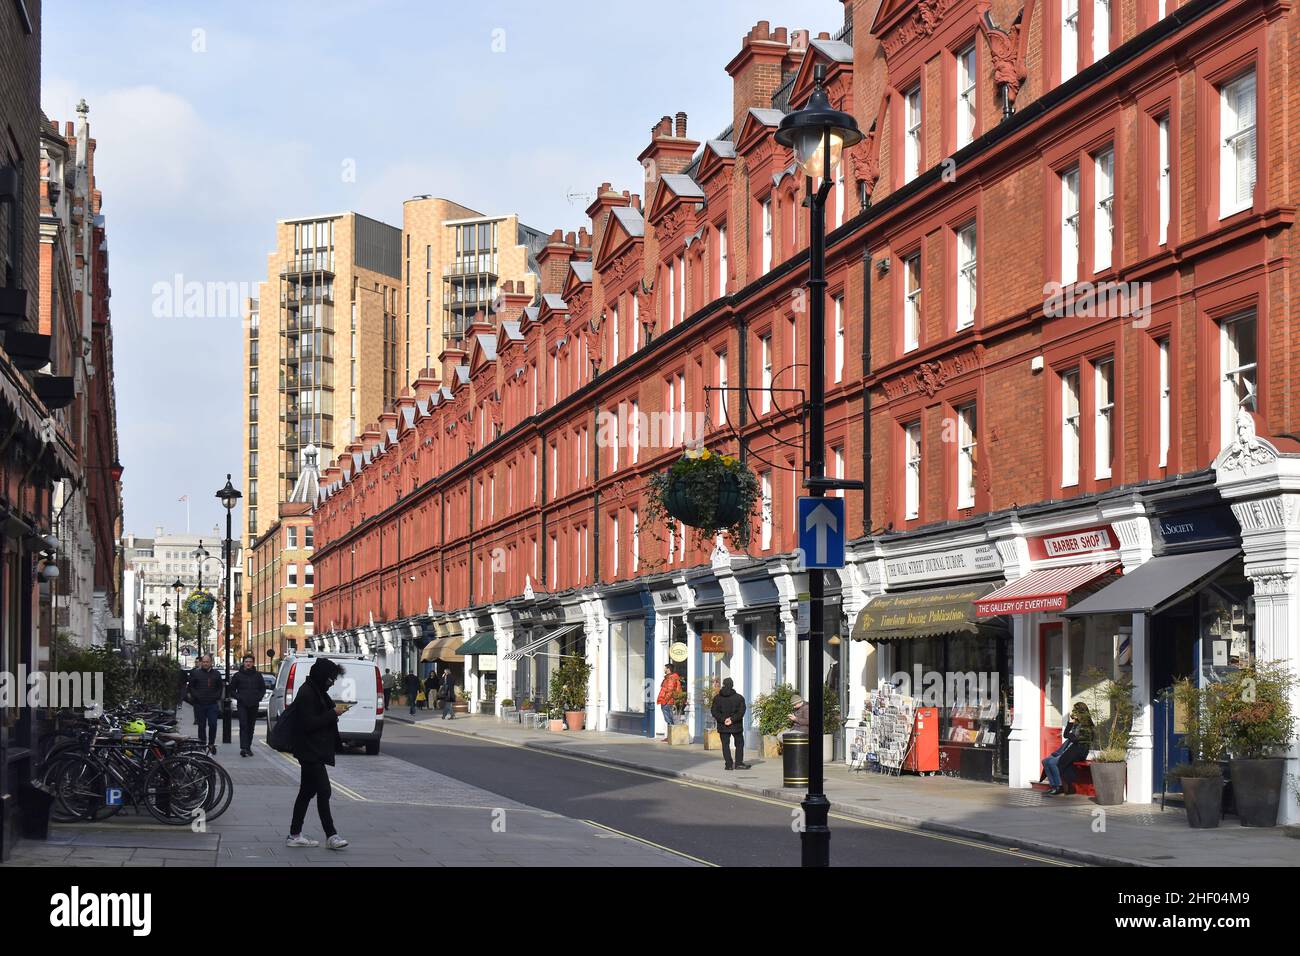 Stylish buildings with shopfronts, Chiltern street Marylebone London UK. Stock Photo